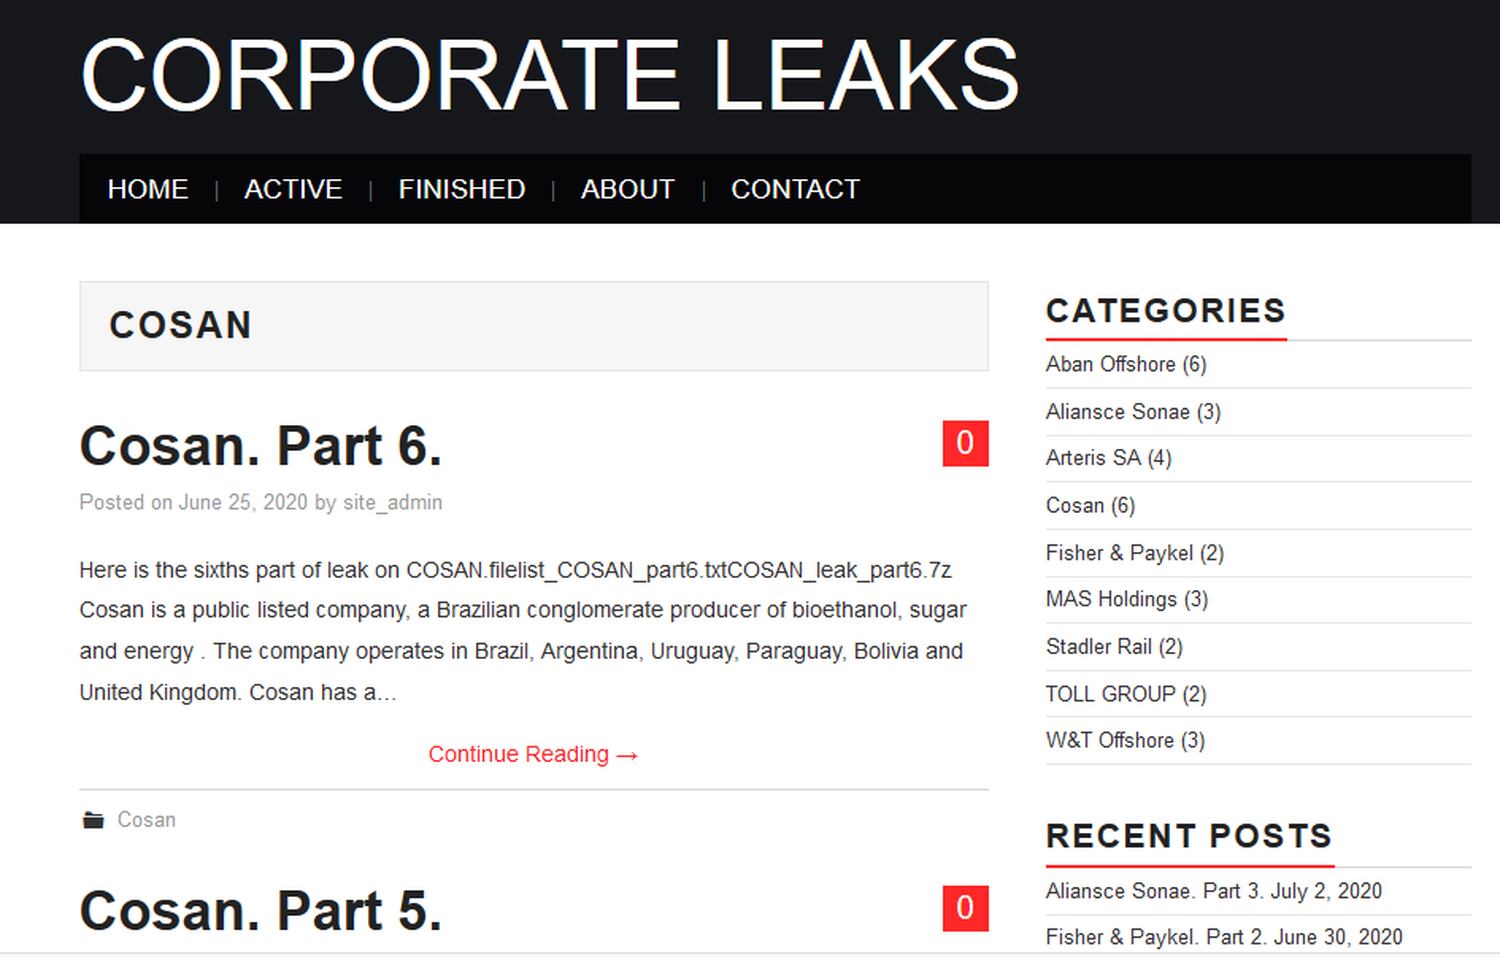 Captura da página Corporate Leaks com anúncio de dados vazados da Cosan.